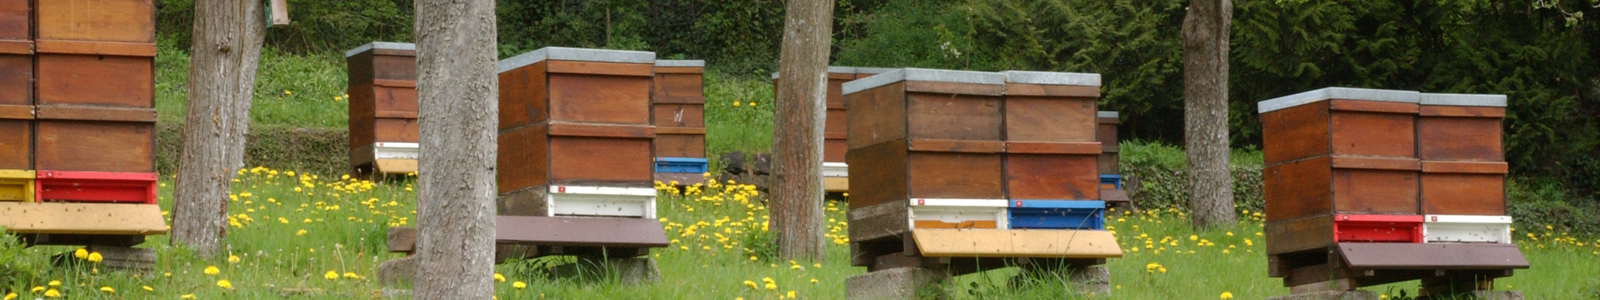 Bienenstöcke stehen am Waldrand ©DLR